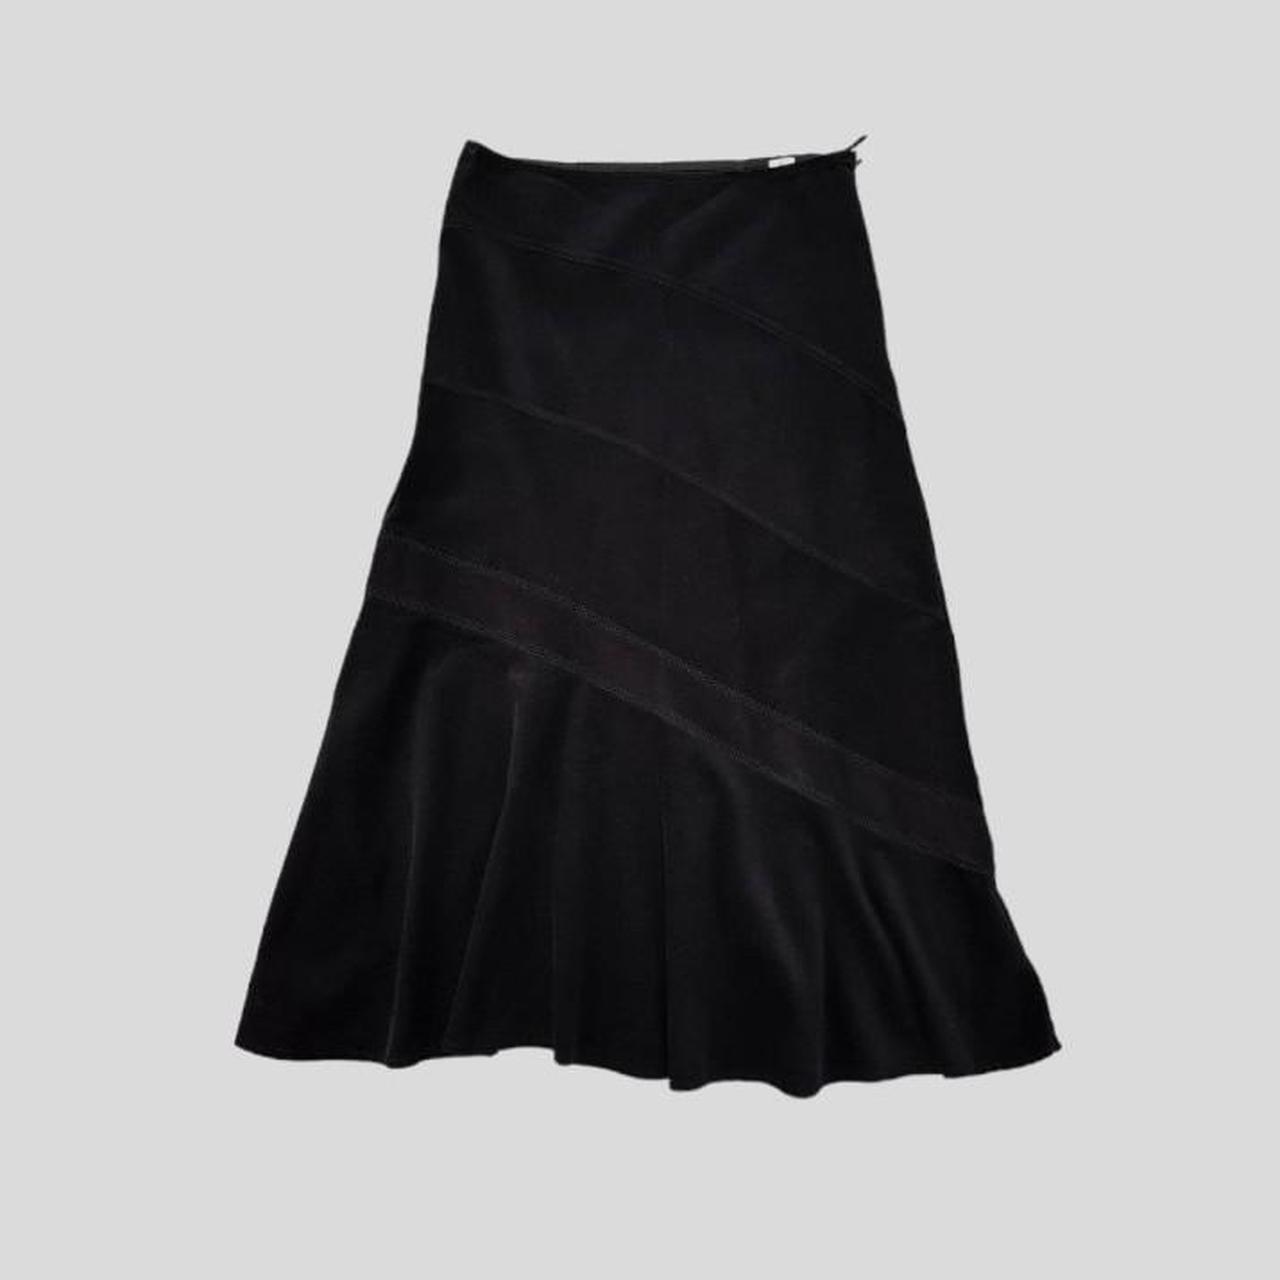 Marks & Spencer Women's Black Skirt | Depop